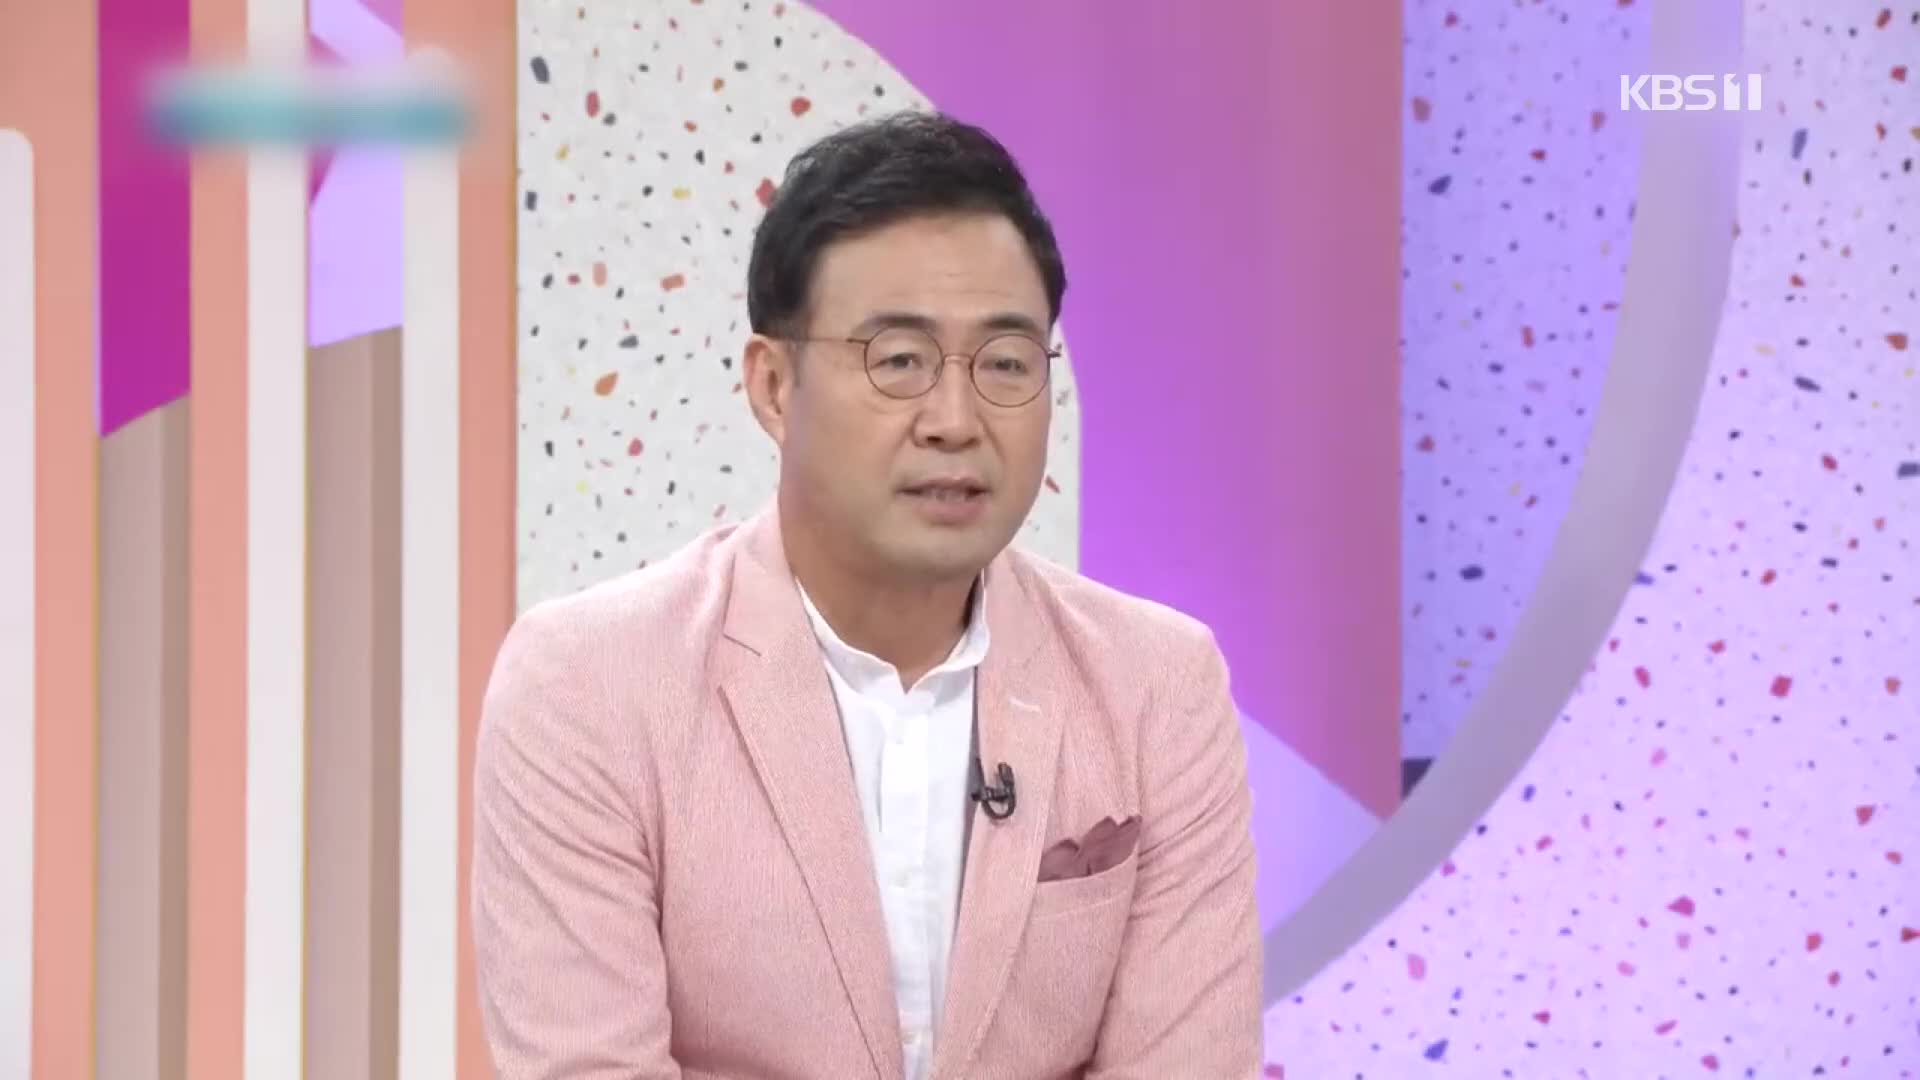 [문화광장] KBS 1TV ‘동네 한 바퀴’, 시즌2 MC 이만기 확정